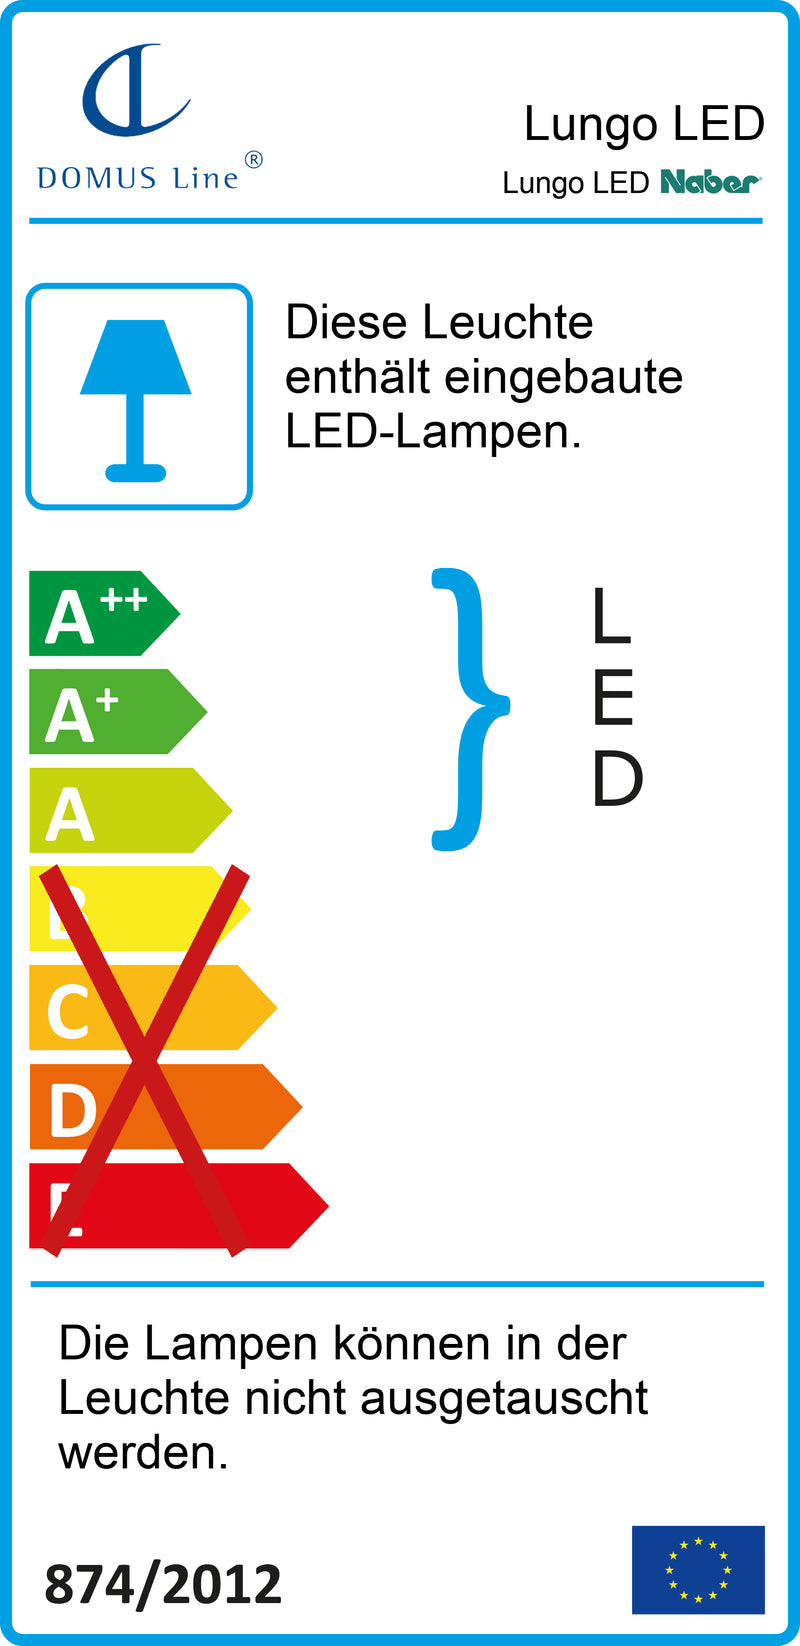 E-Label zu Zeichnung zu Lungo LED als Variante L 1200 mm, 16,8 W, edelstahlfarbig von Naber GmbH in der Kategorie Lichttechnik in Österreich auf conceptshop.at